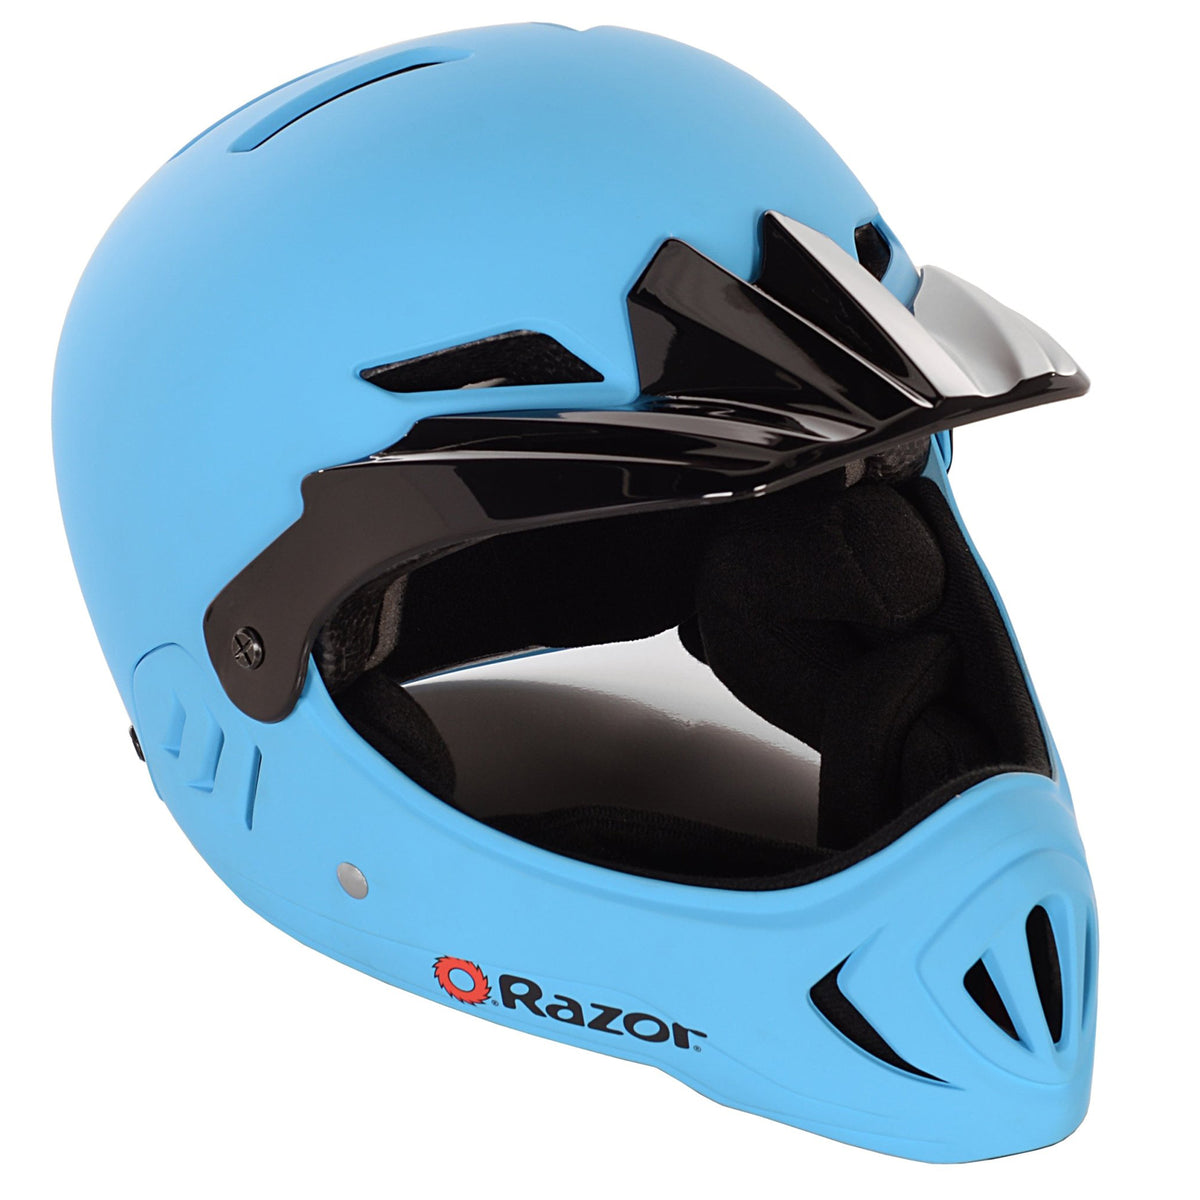 Razor® Full Face Multi-Sport Child Helmet | Helmet for Kids Ages 5+